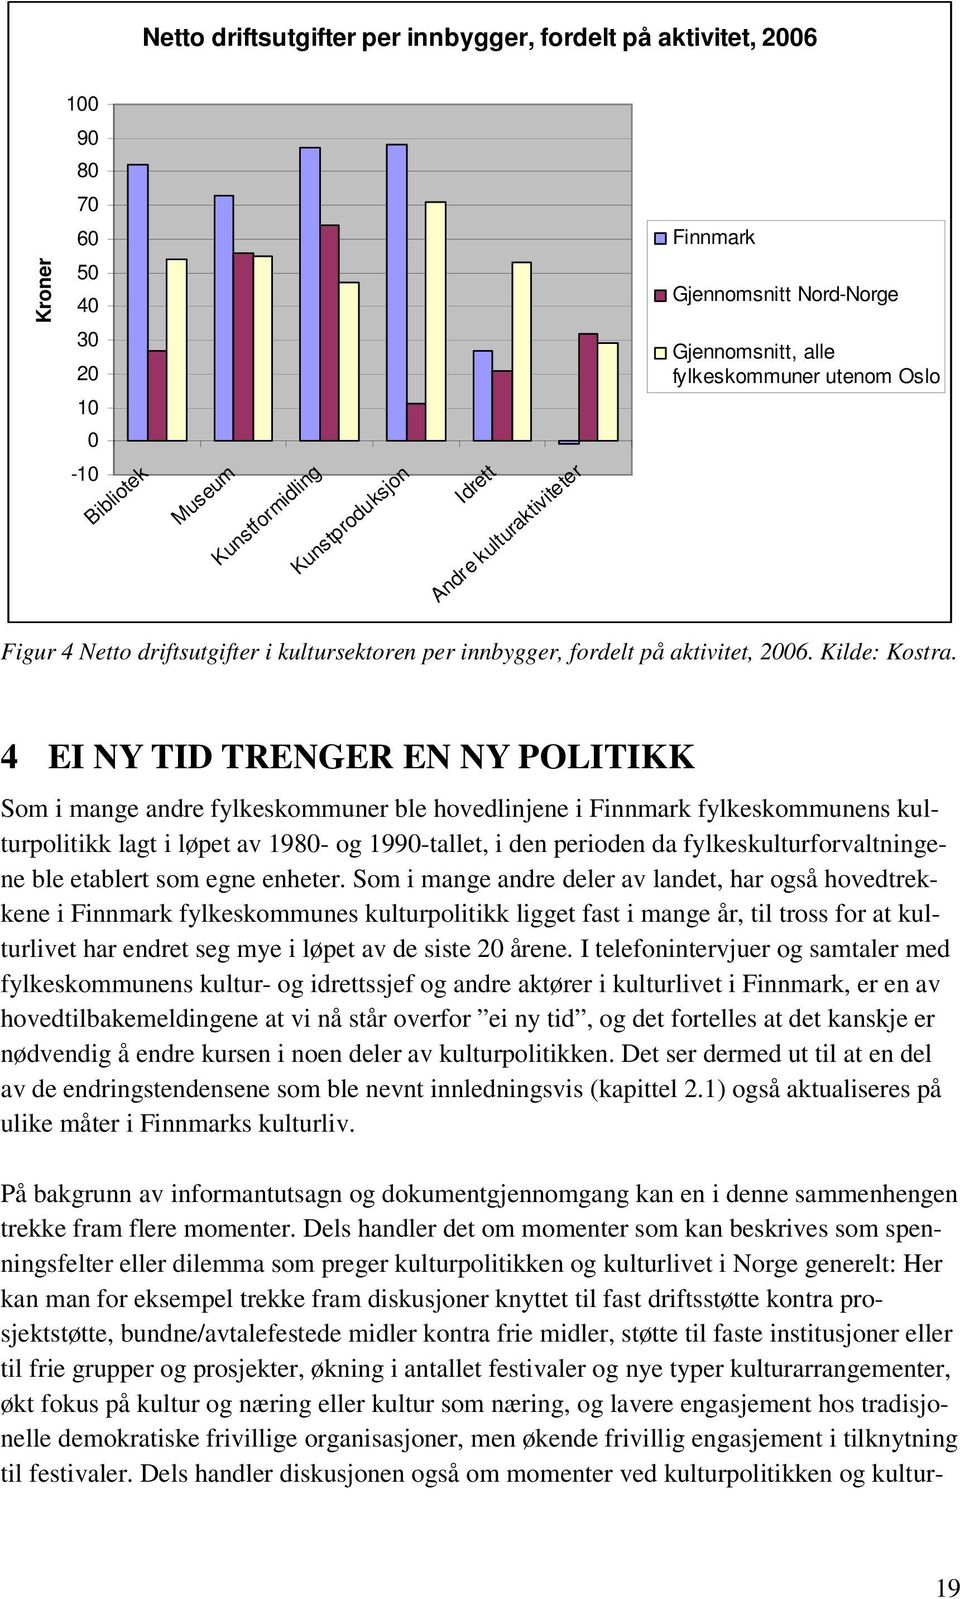 4 EI NY TID TRENGER EN NY POLITIKK Som i mange andre fylkeskommuner ble hovedlinjene i Finnmark fylkeskommunens kulturpolitikk lagt i løpet av 1980- og 1990-tallet, i den perioden da